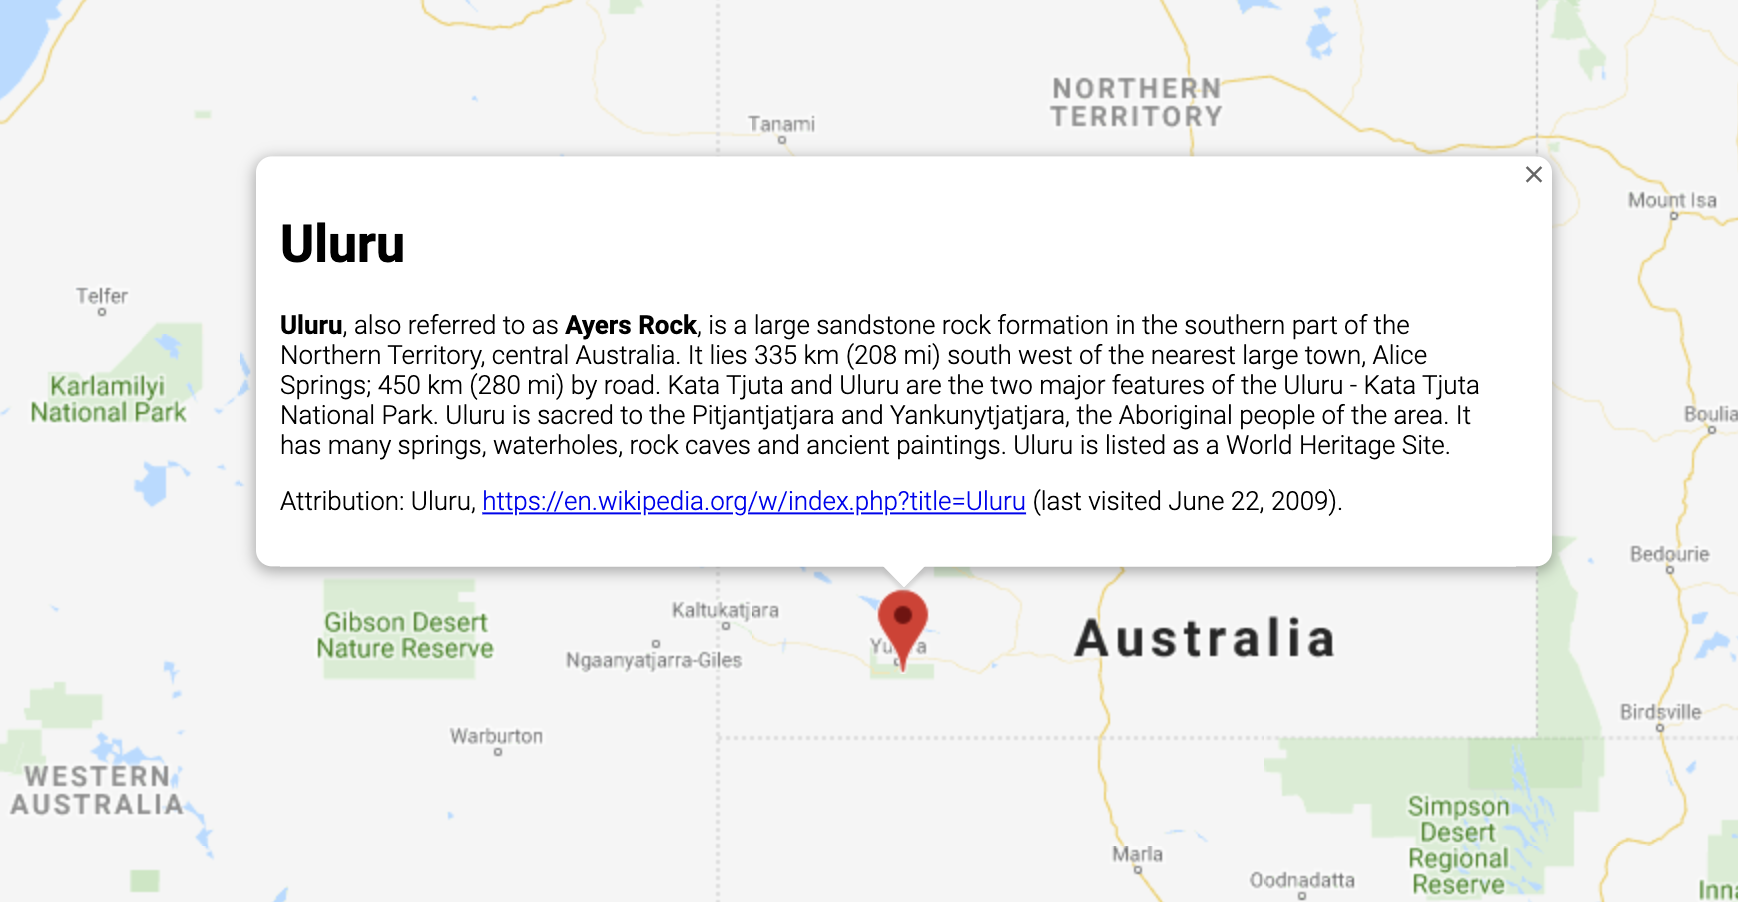 חלון מידע שמציג מידע על מיקום באוסטרליה.